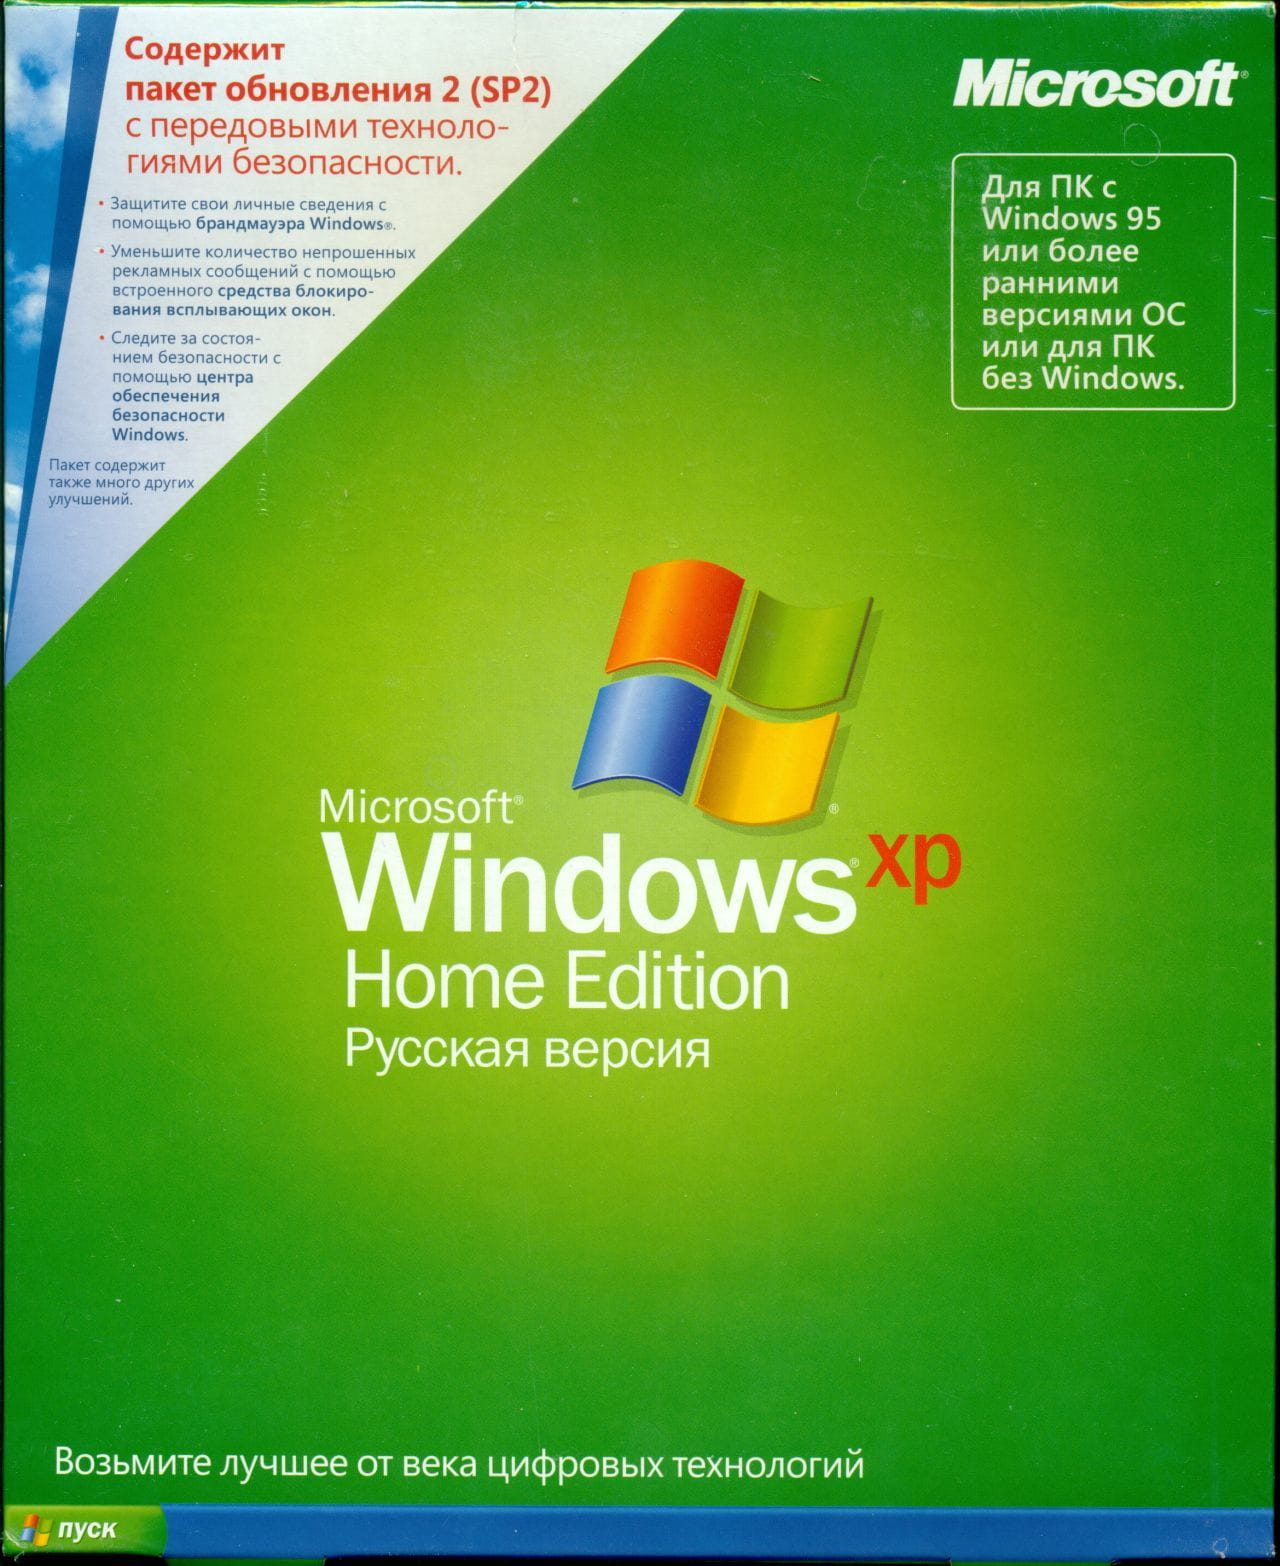 Windows xp home os | angeloawards.com